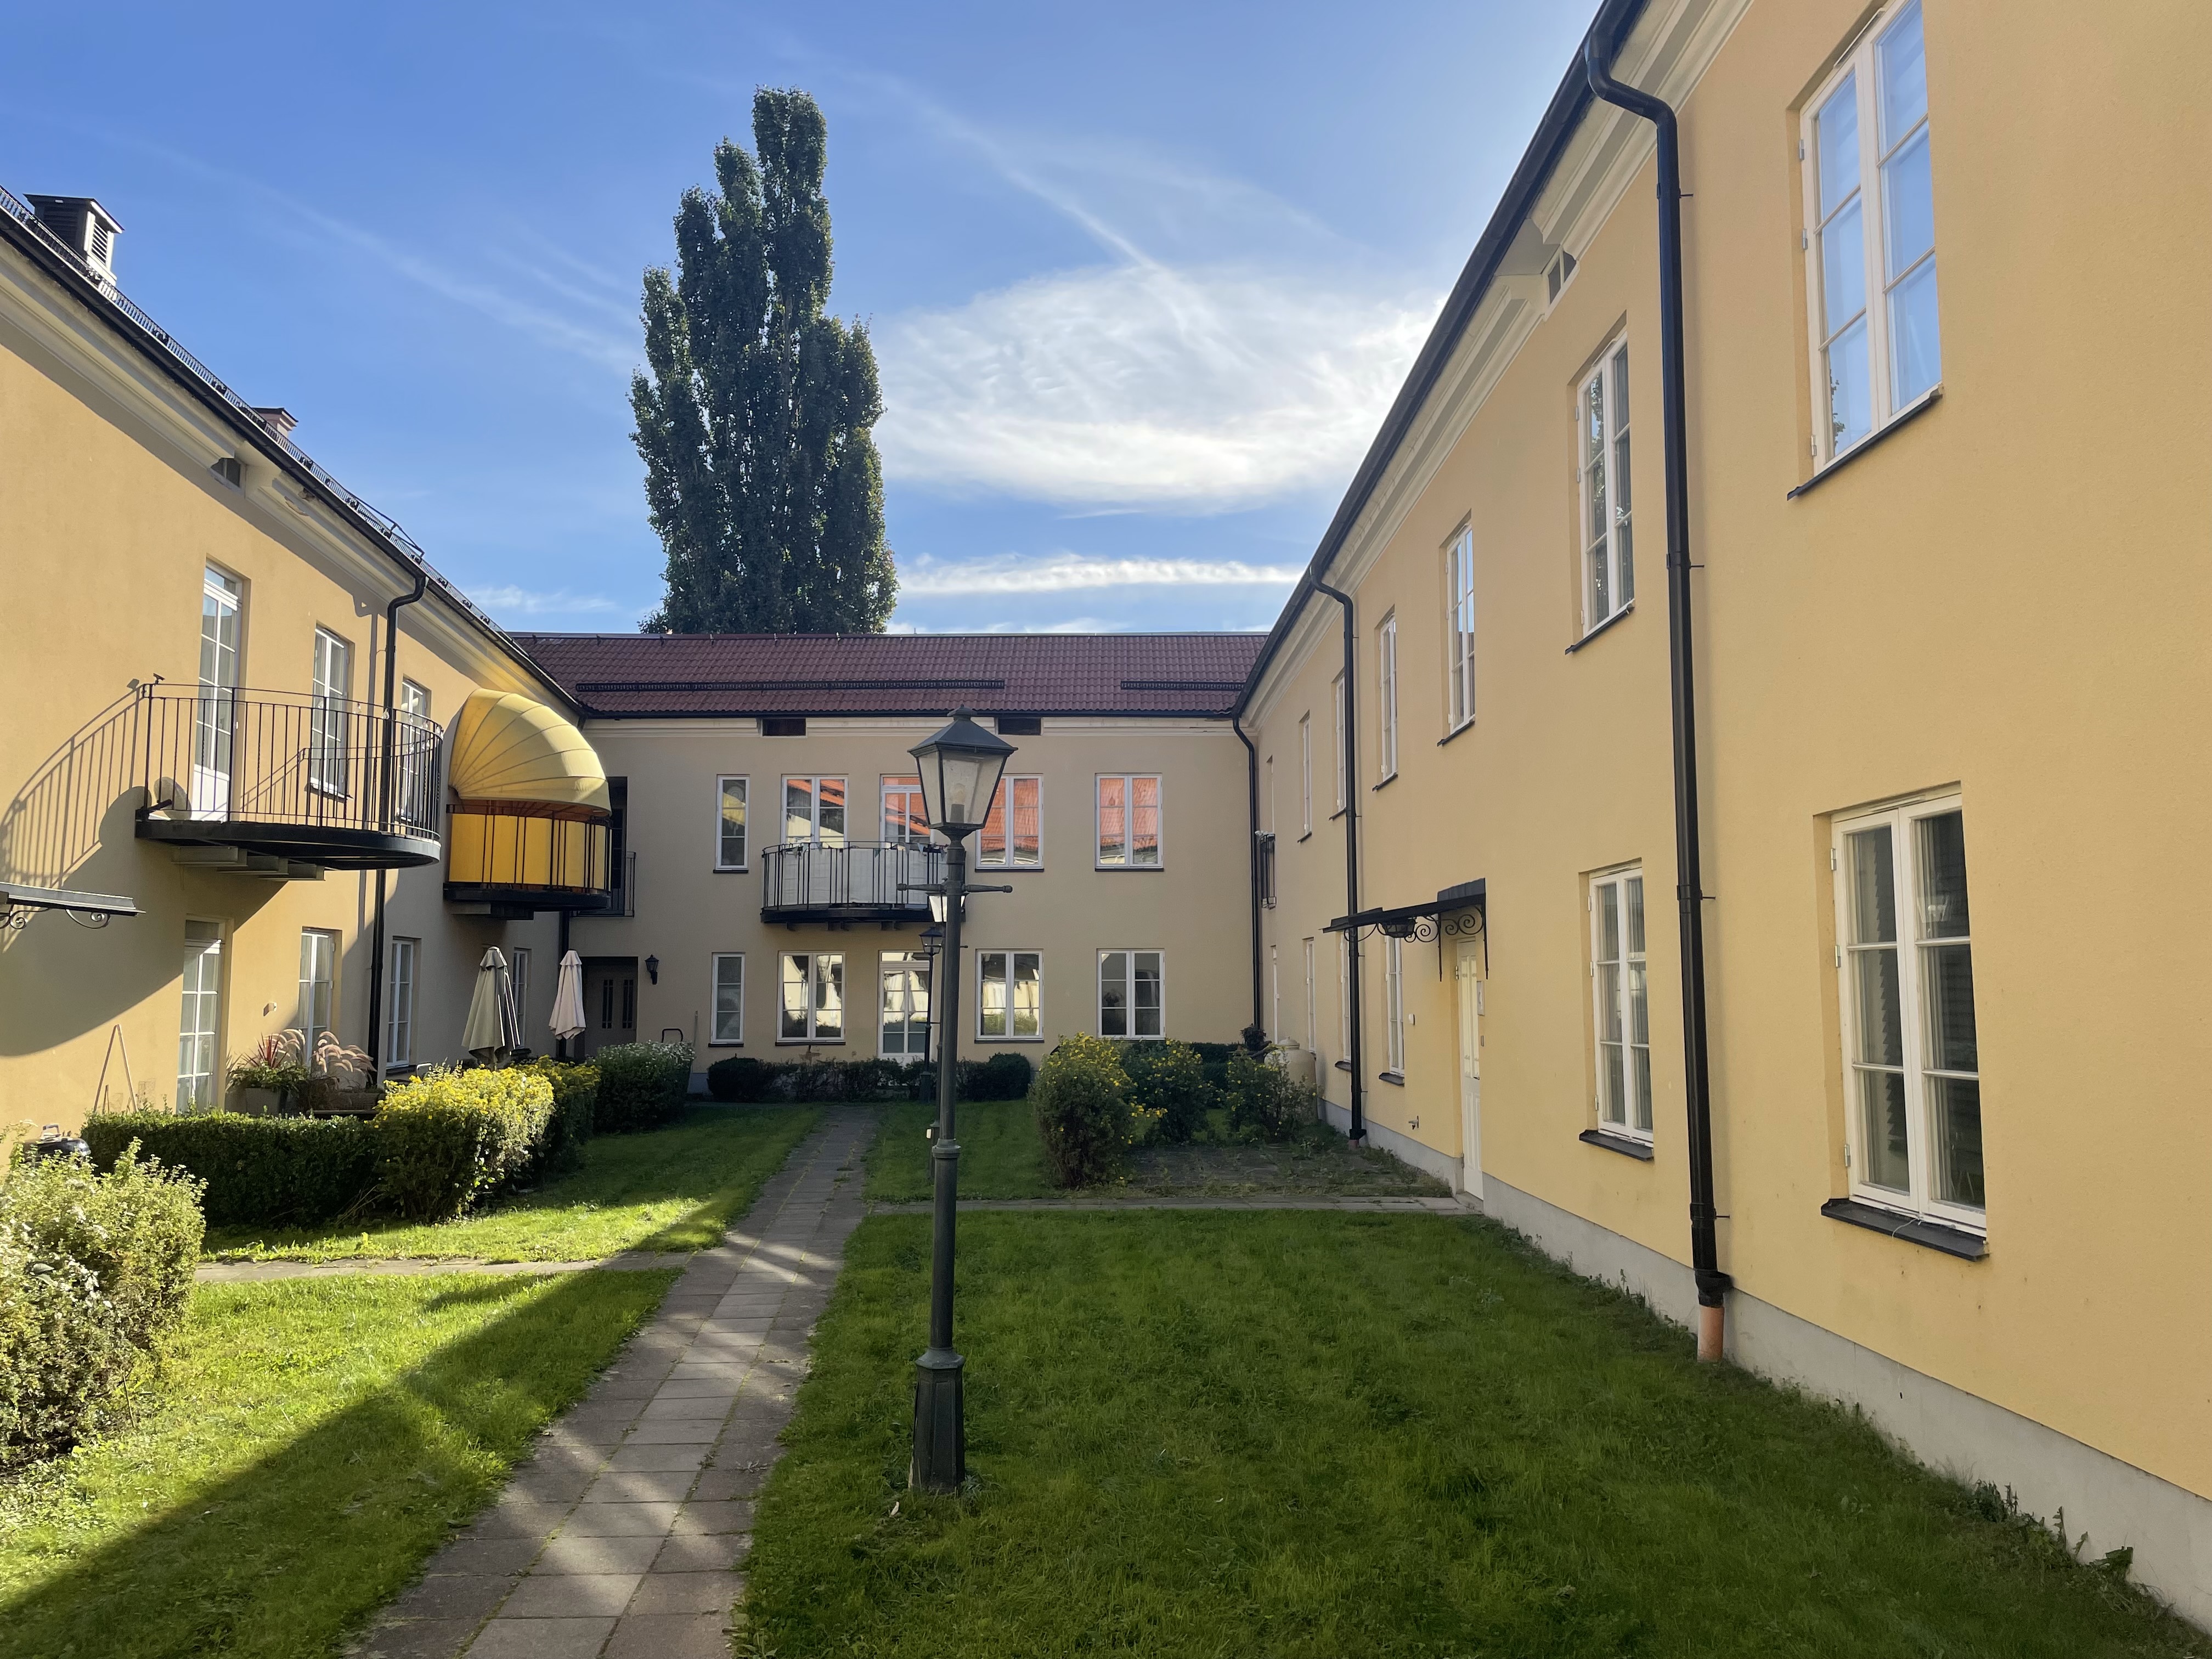 Lägenhet i Gamla staden, Eskilstuna, Södermanland, Köpmangatan 64 A